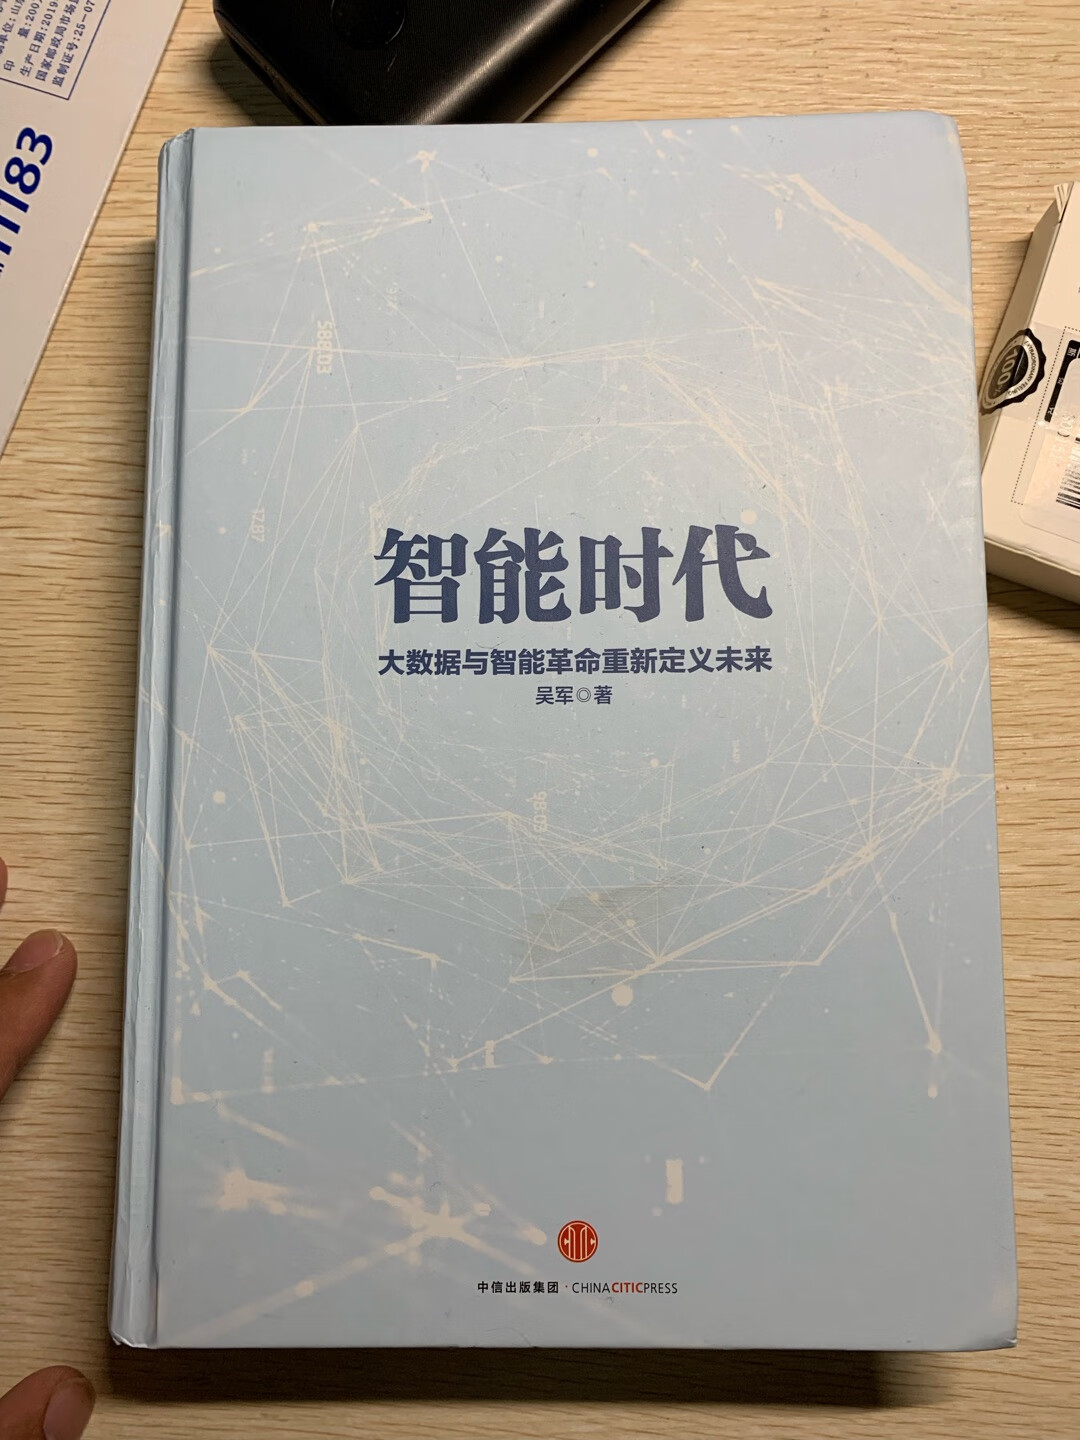 非常棒，吴军老师的书一如既往的好看。